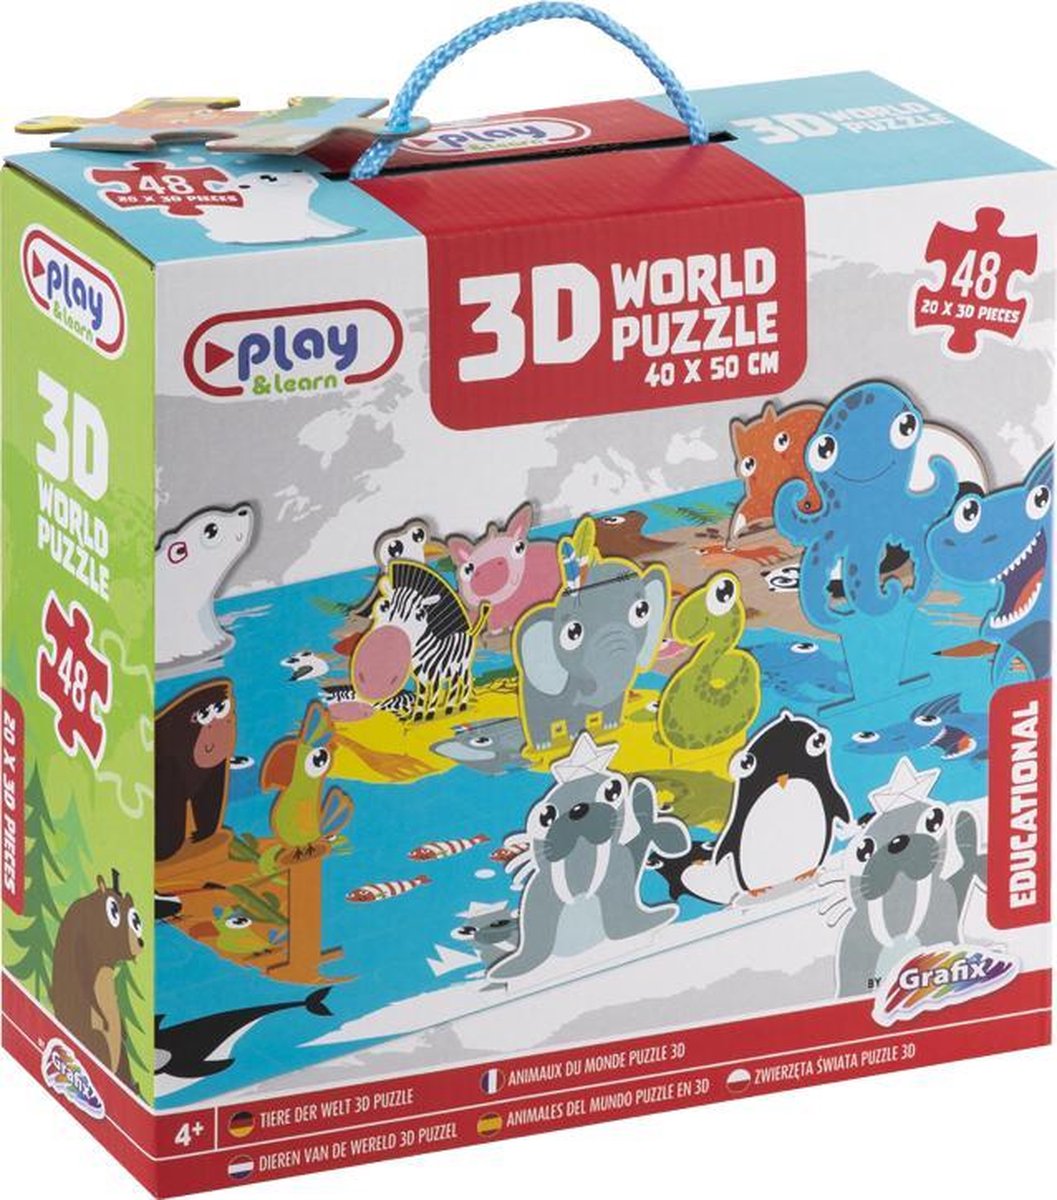 Grafix 3D Wereldpuzzel 40 X 50 CM 48 puzzelstukjes puzzel voor kinderen vanaf 4 jaar educatieve puzzel dieren